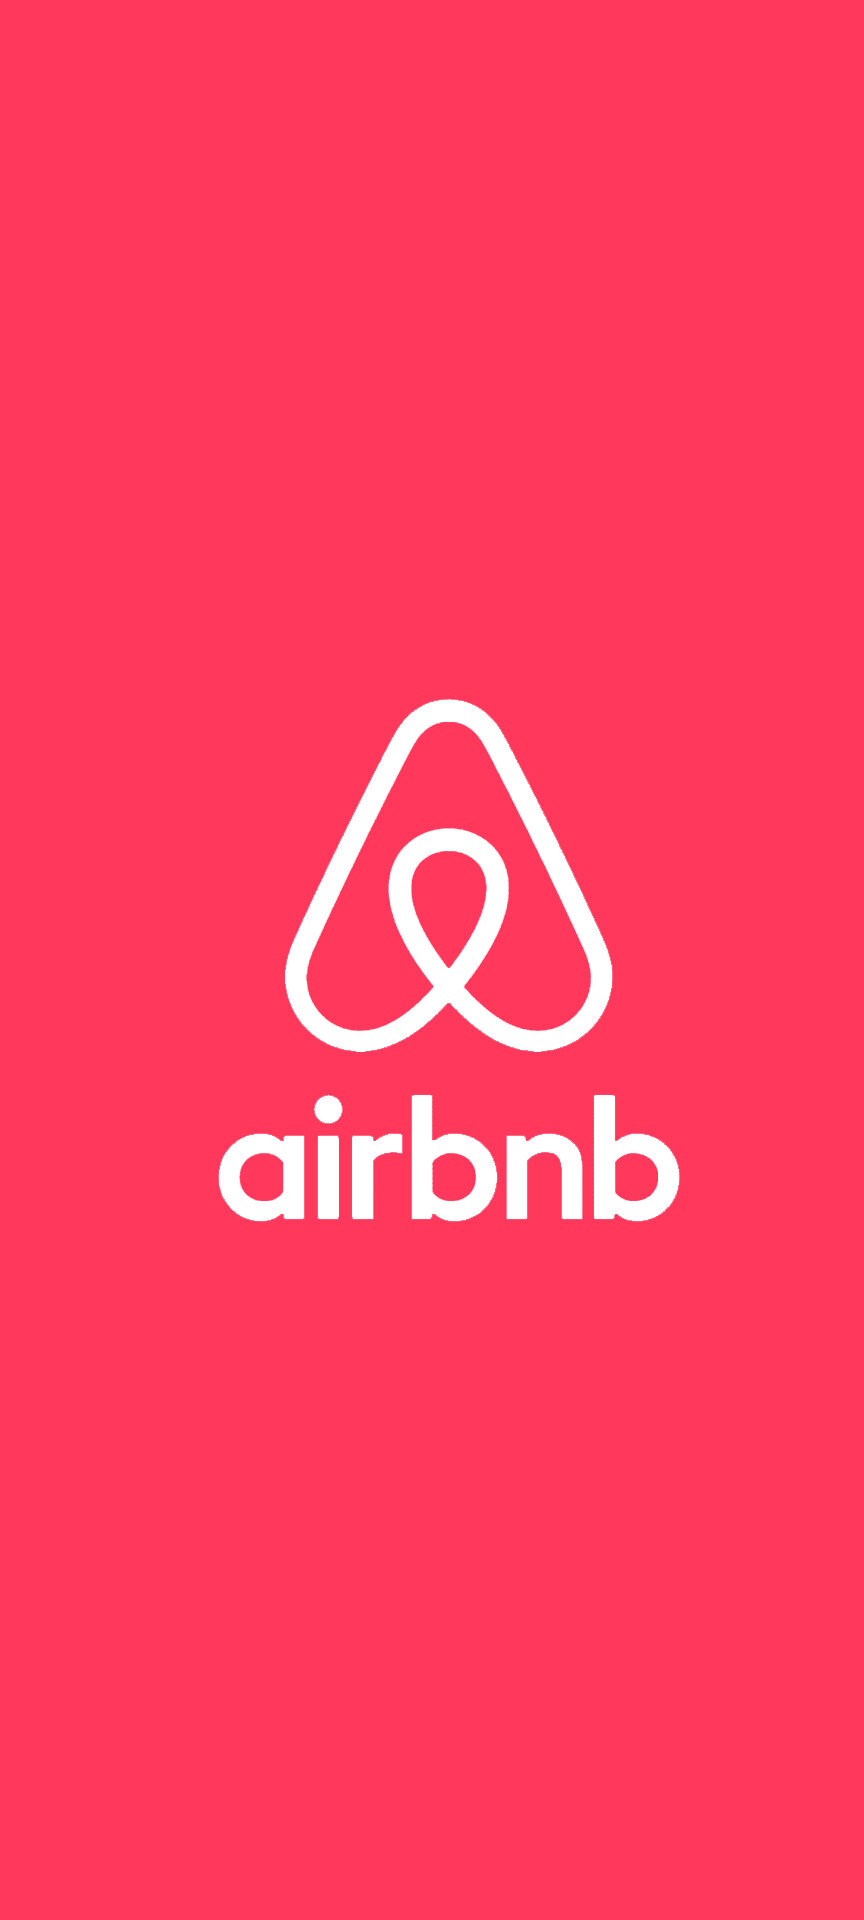 airbnb_apps_voyage.jpg